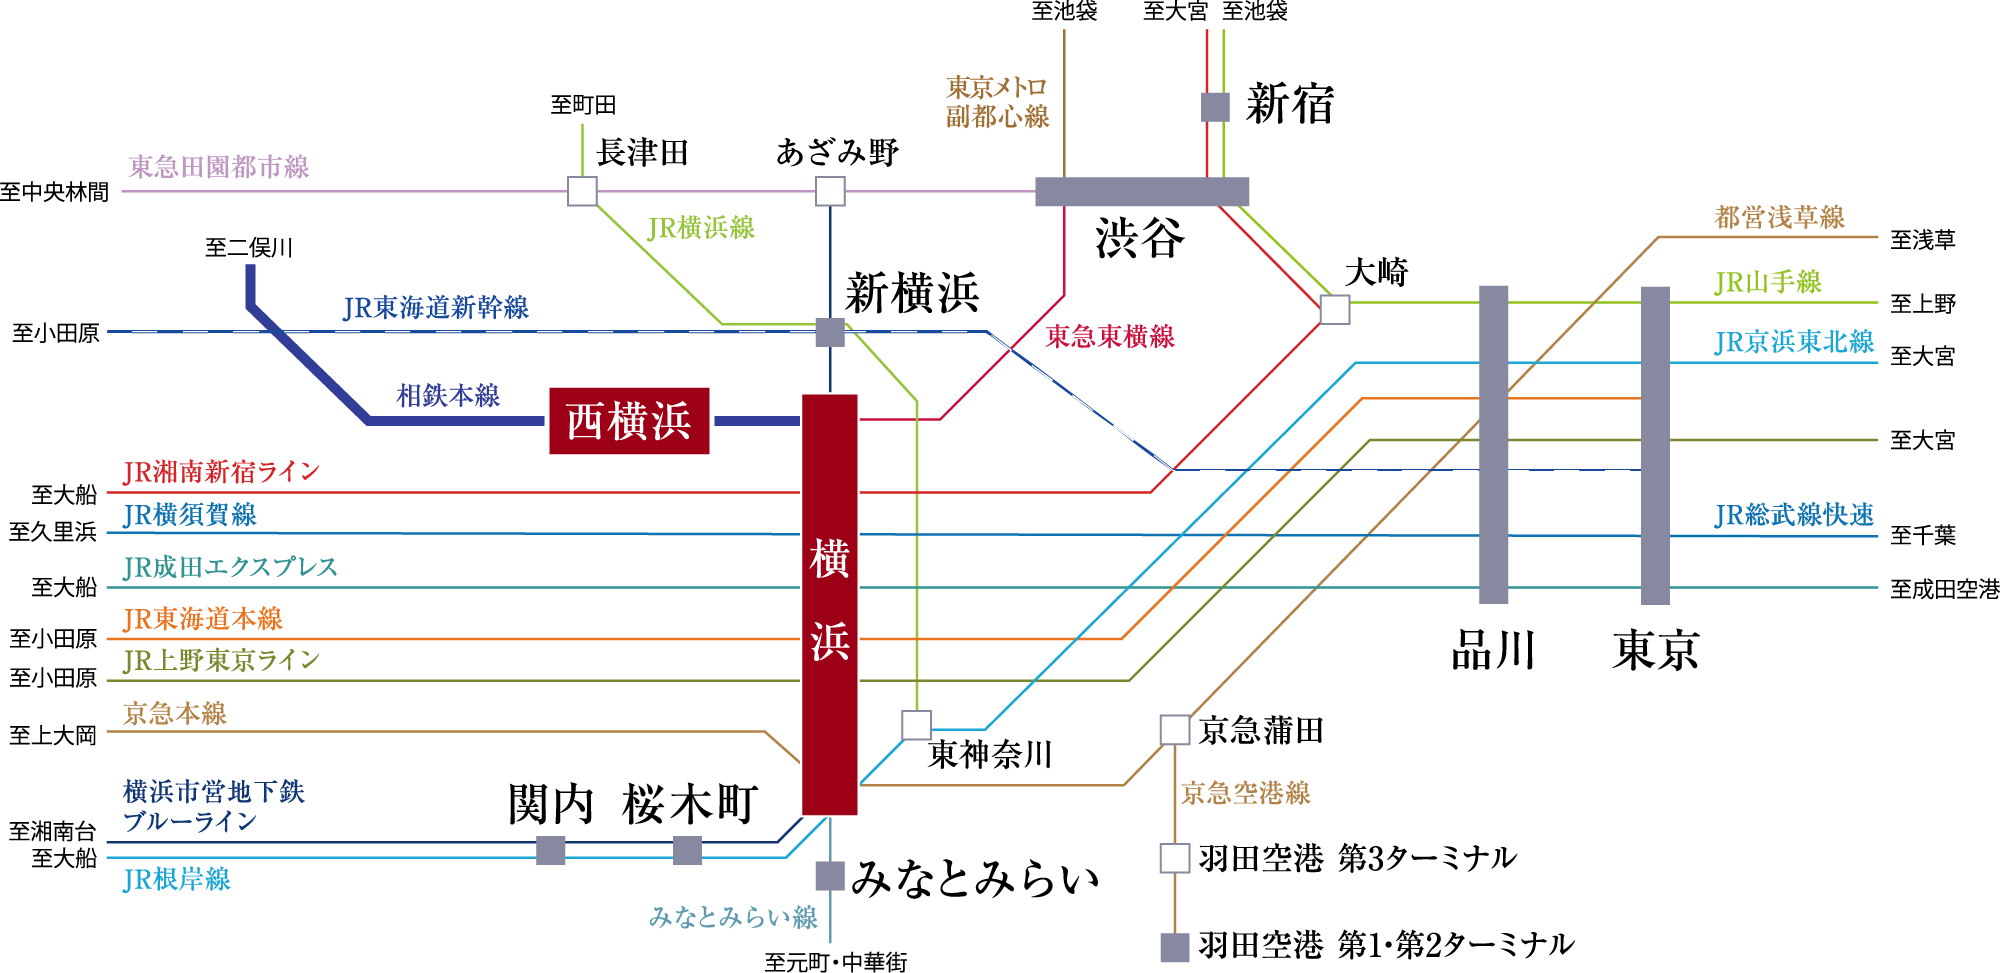 横浜エリアや都心へも身軽な鉄道アクセス